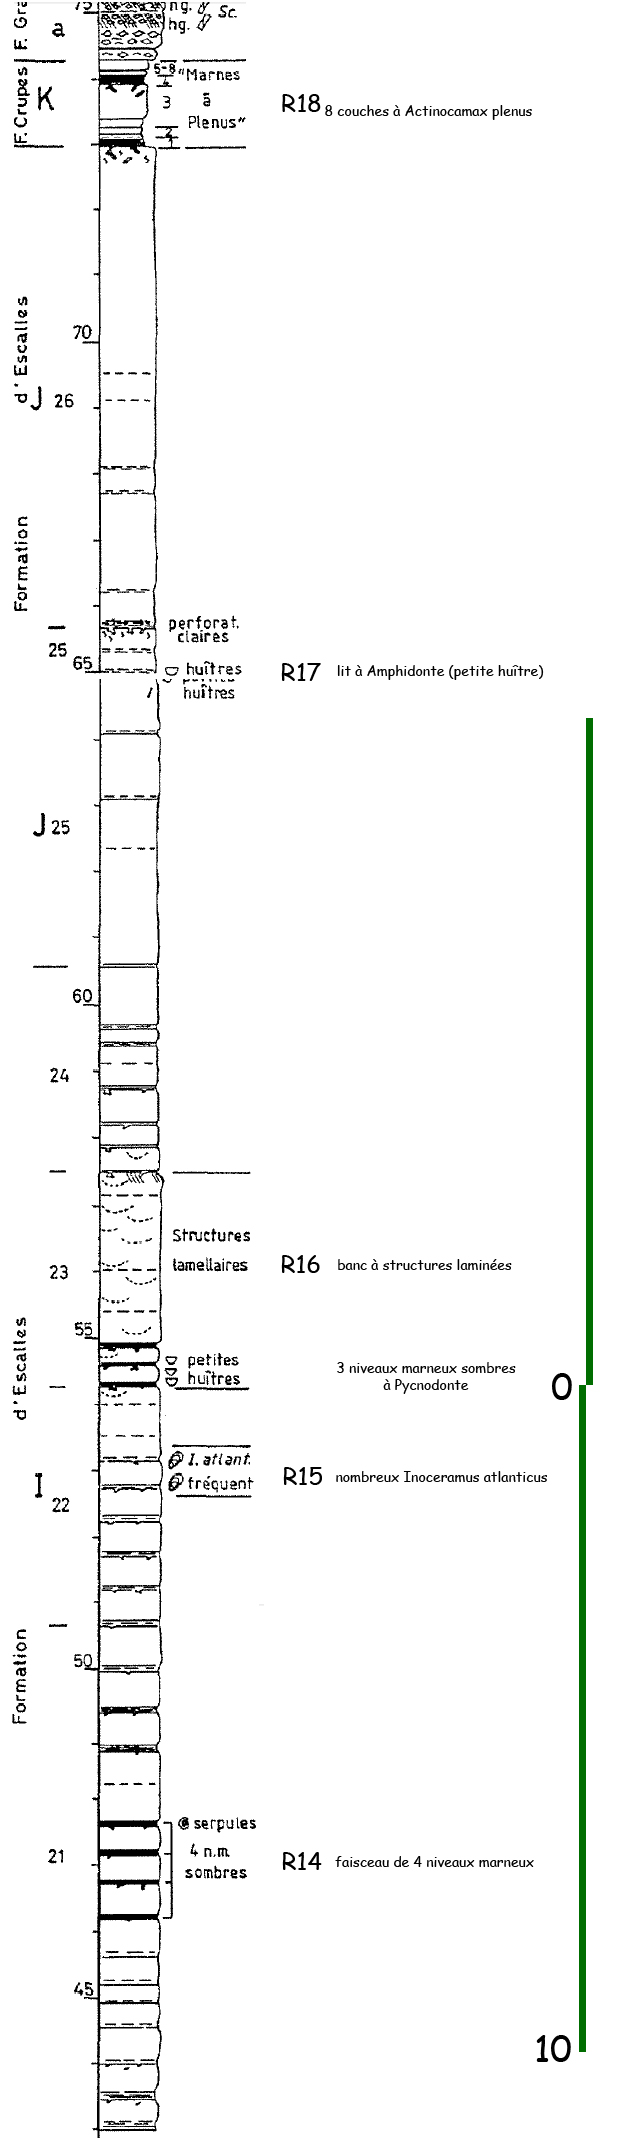 Lithostratigraphie de la partie supérieure du Cénomanien du Blanc-Nez, d'après F. Amédro et F. Robaszynski (2002), modifié